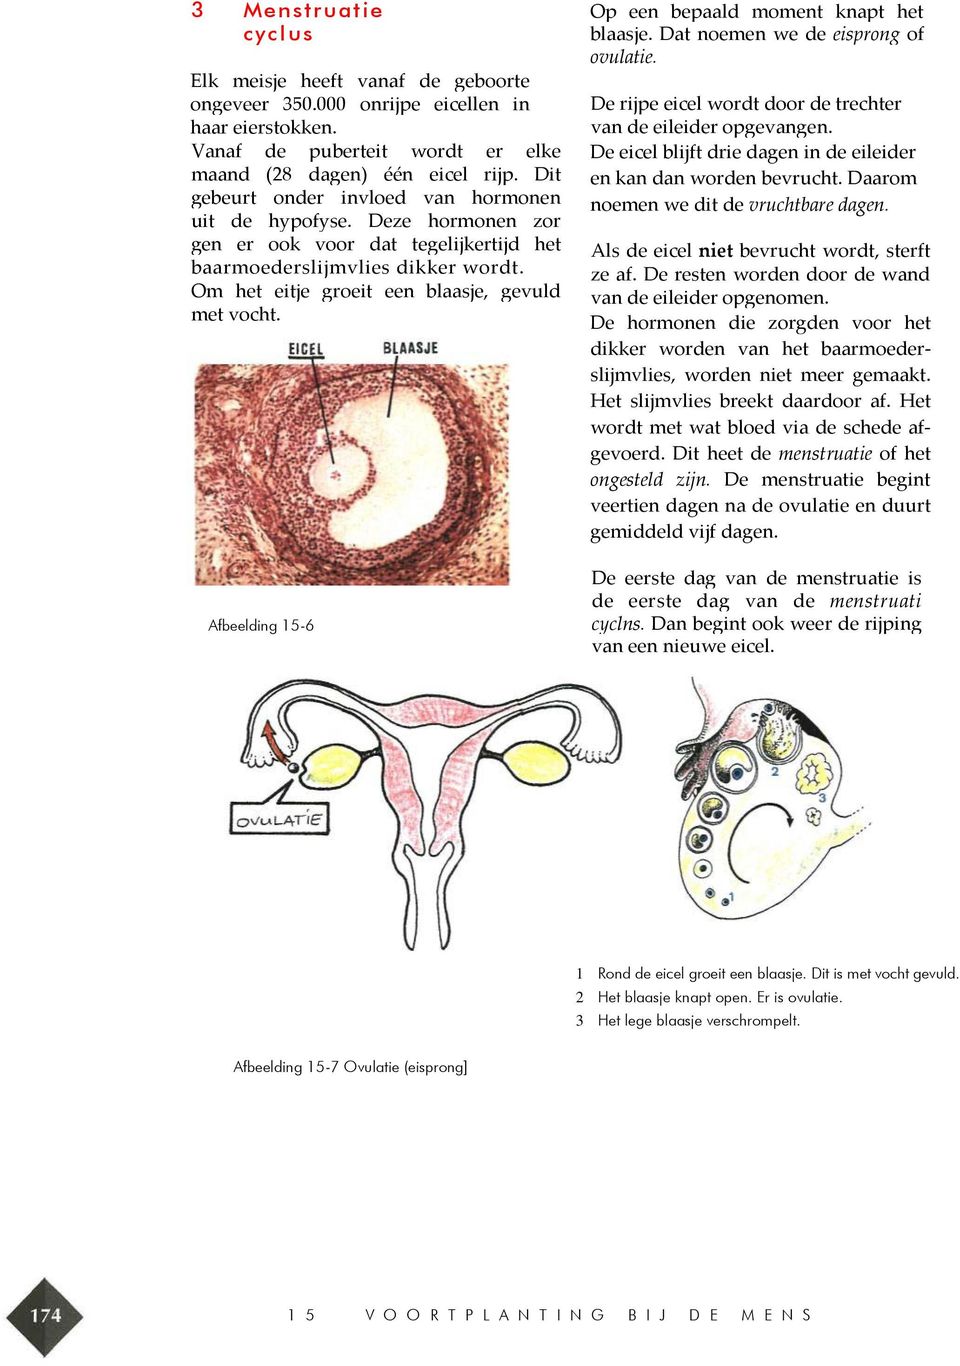 Afbeelding 15-6 Op een bepaald moment knapt het blaasje. Dat noemen we de eisprong of ovulatie. De rijpe eicel wordt door de trechter van de eileider opgevangen.